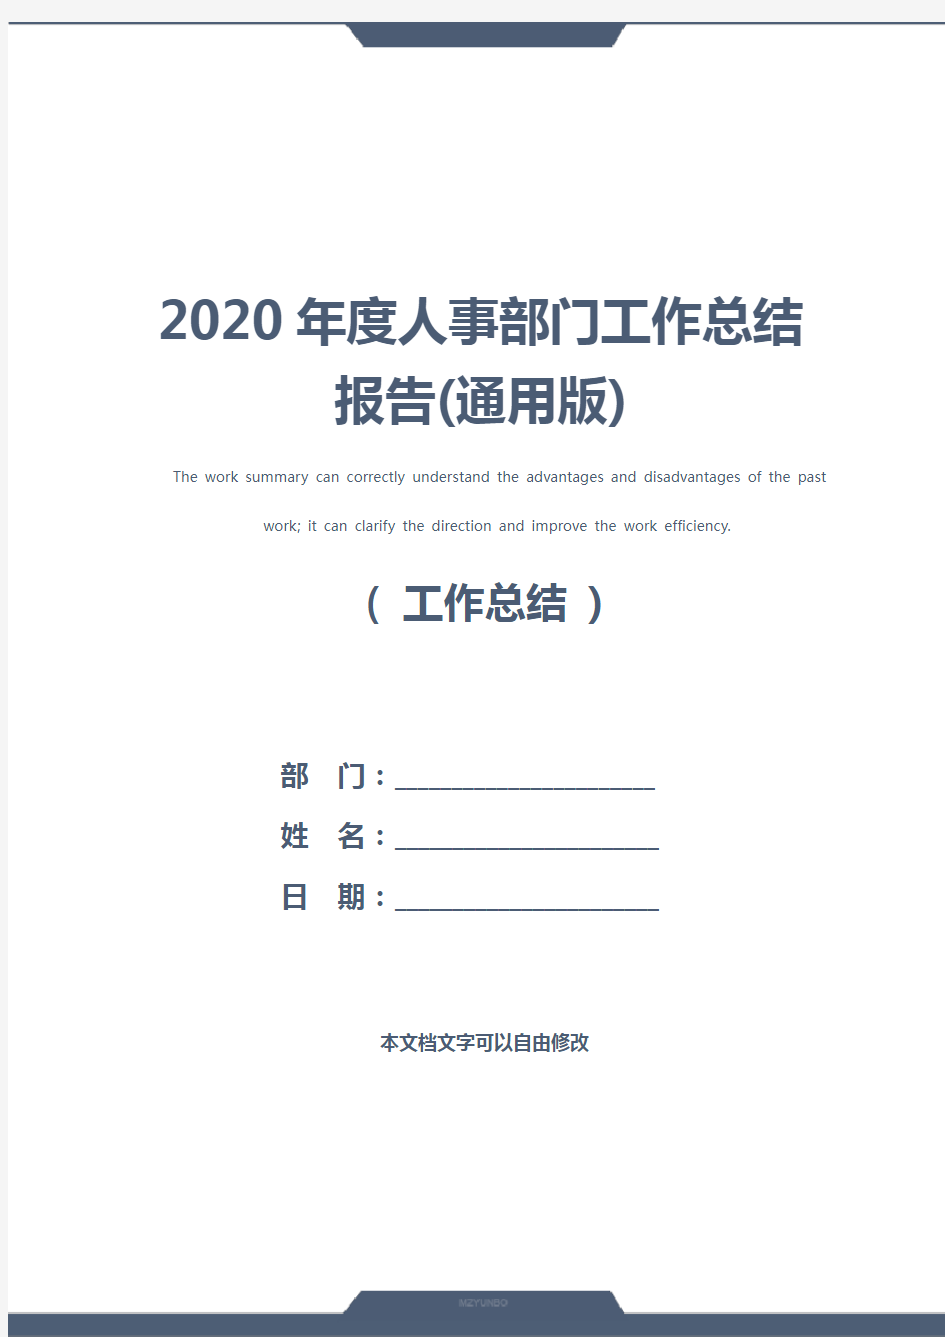 2020年度人事部门工作总结报告(通用版)